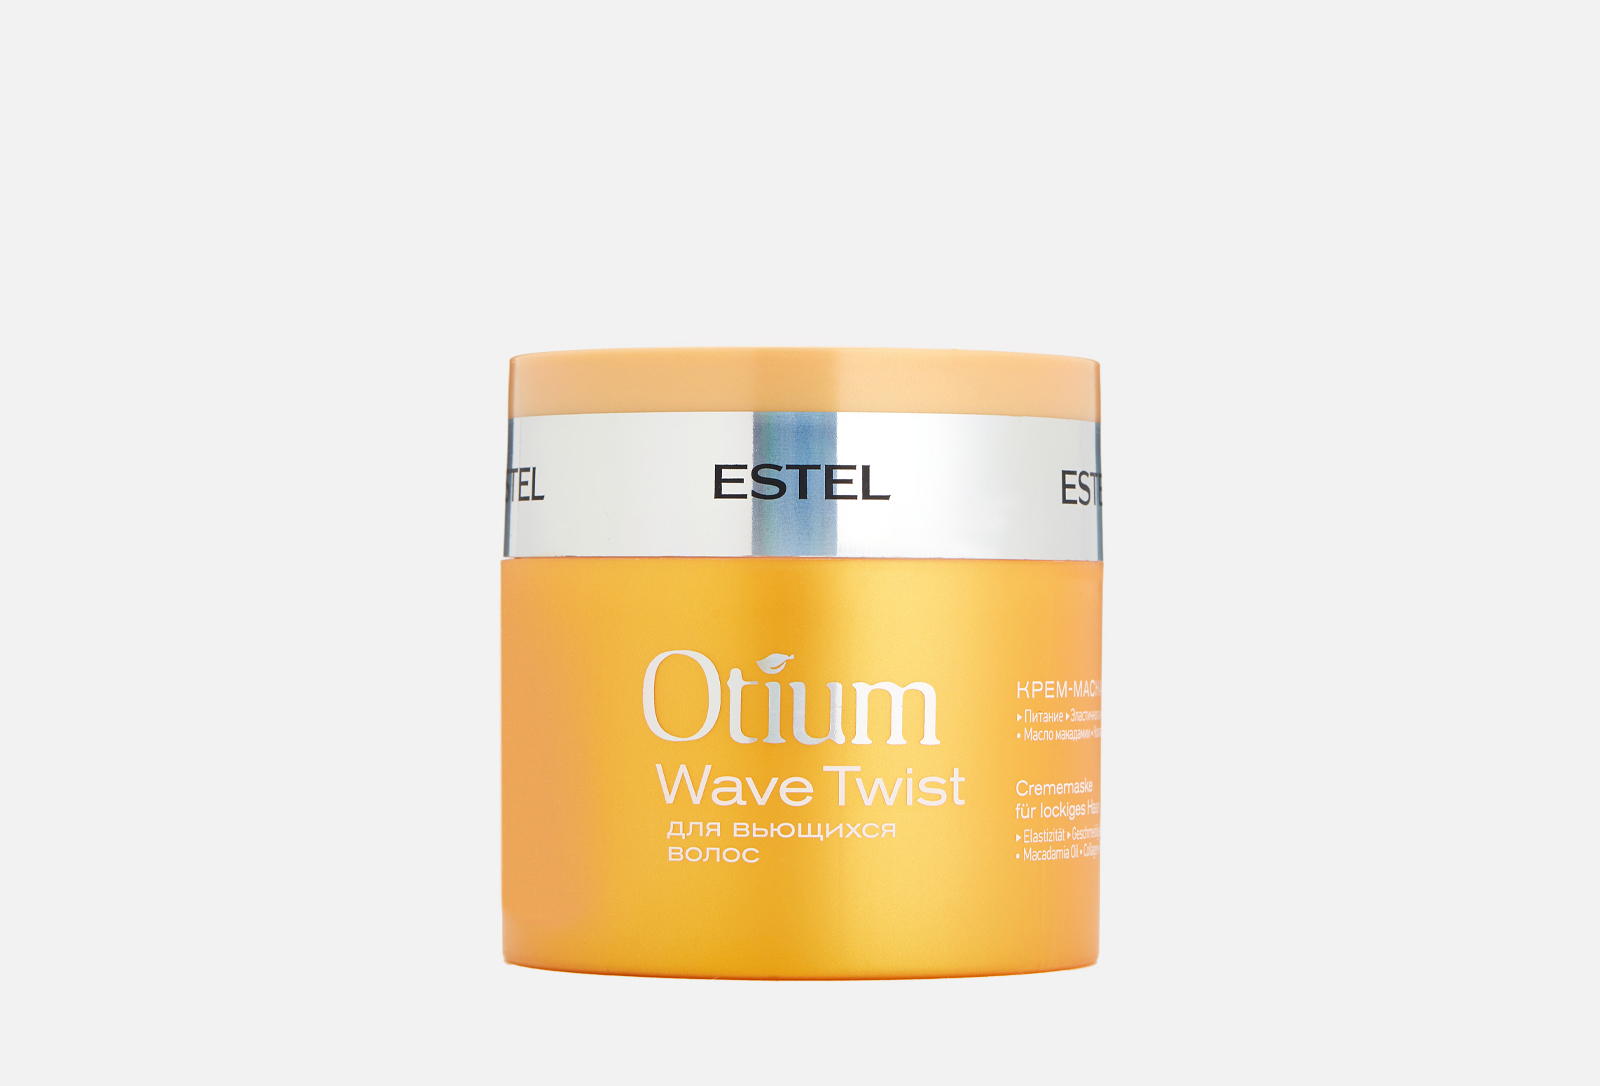 Estel Otium Wave Twist крем-маска для вьющихся волос 300 мл. Otium Wave Twist для вьющихся волос. Крем-маска для вьющихся волос Otium Wave Twist. Эстель отиум для вьющихся волос.